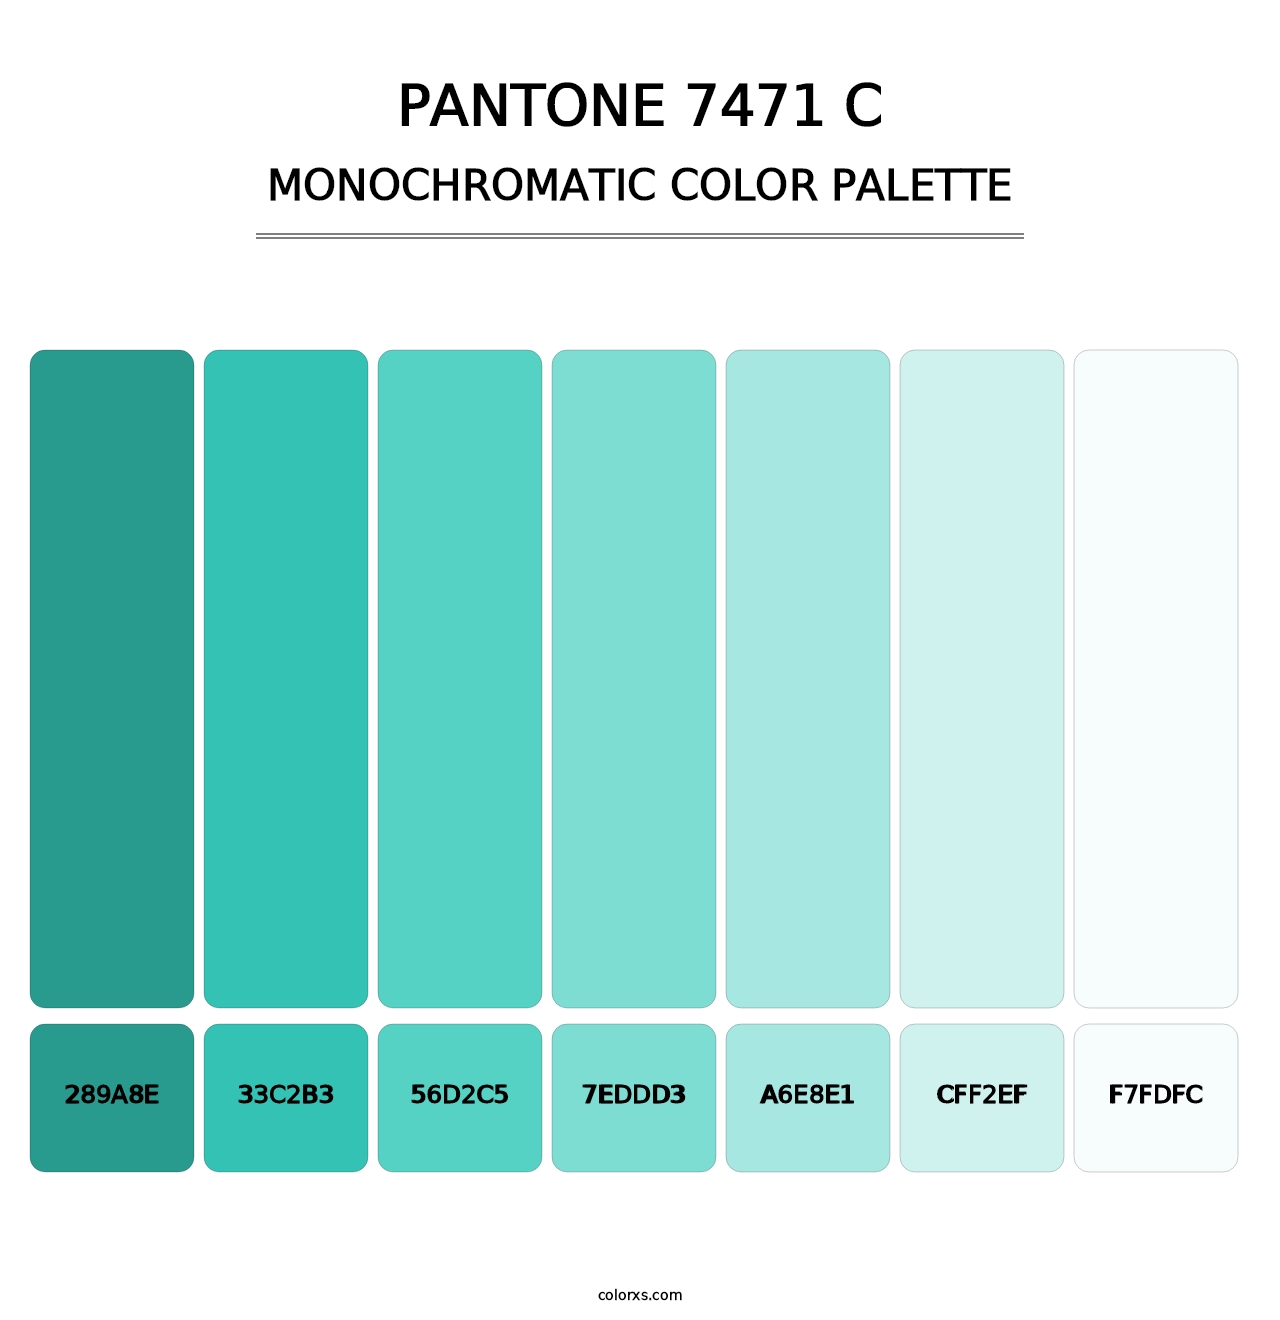 PANTONE 7471 C - Monochromatic Color Palette